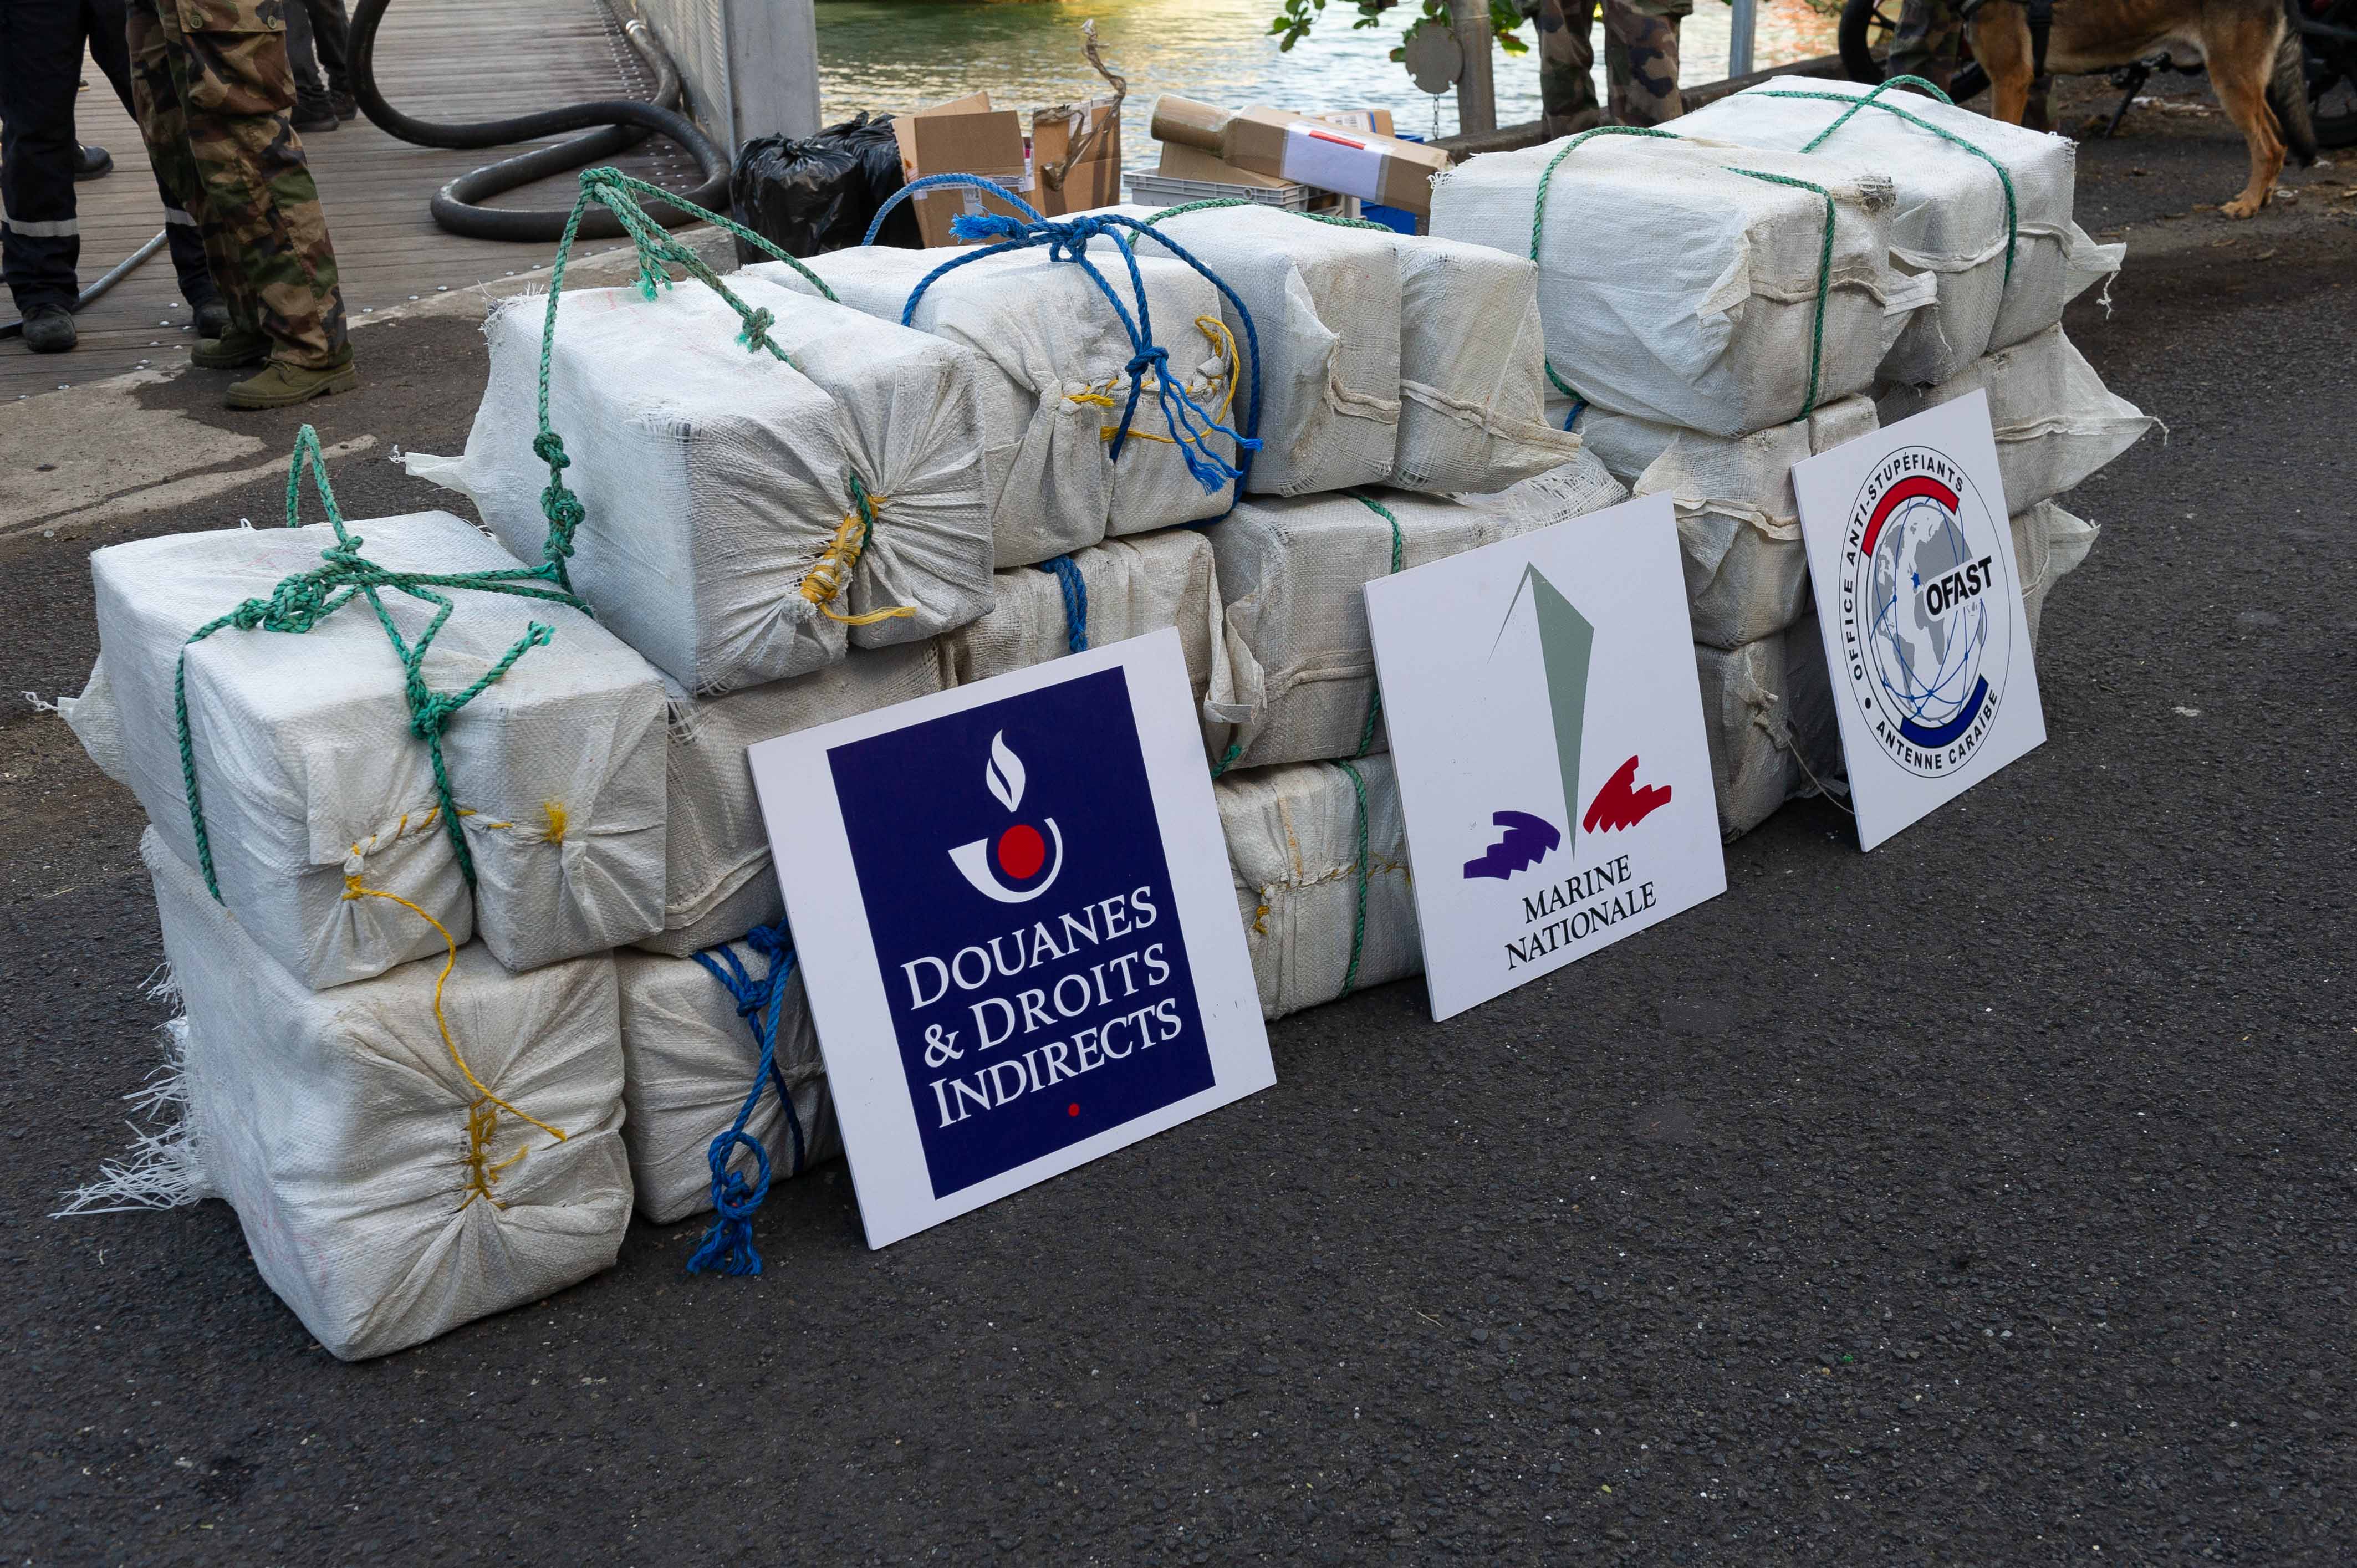     L'équipage du Ventôse saisit 435 kilos de cocaïne au large de la Guadeloupe

